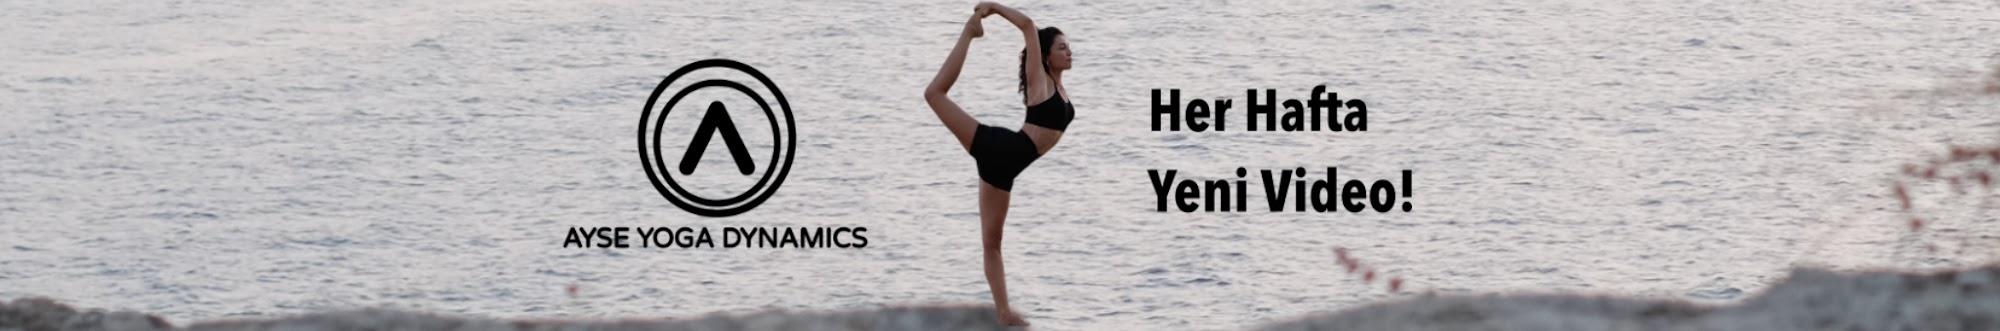 Ayse Yoga Dynamics